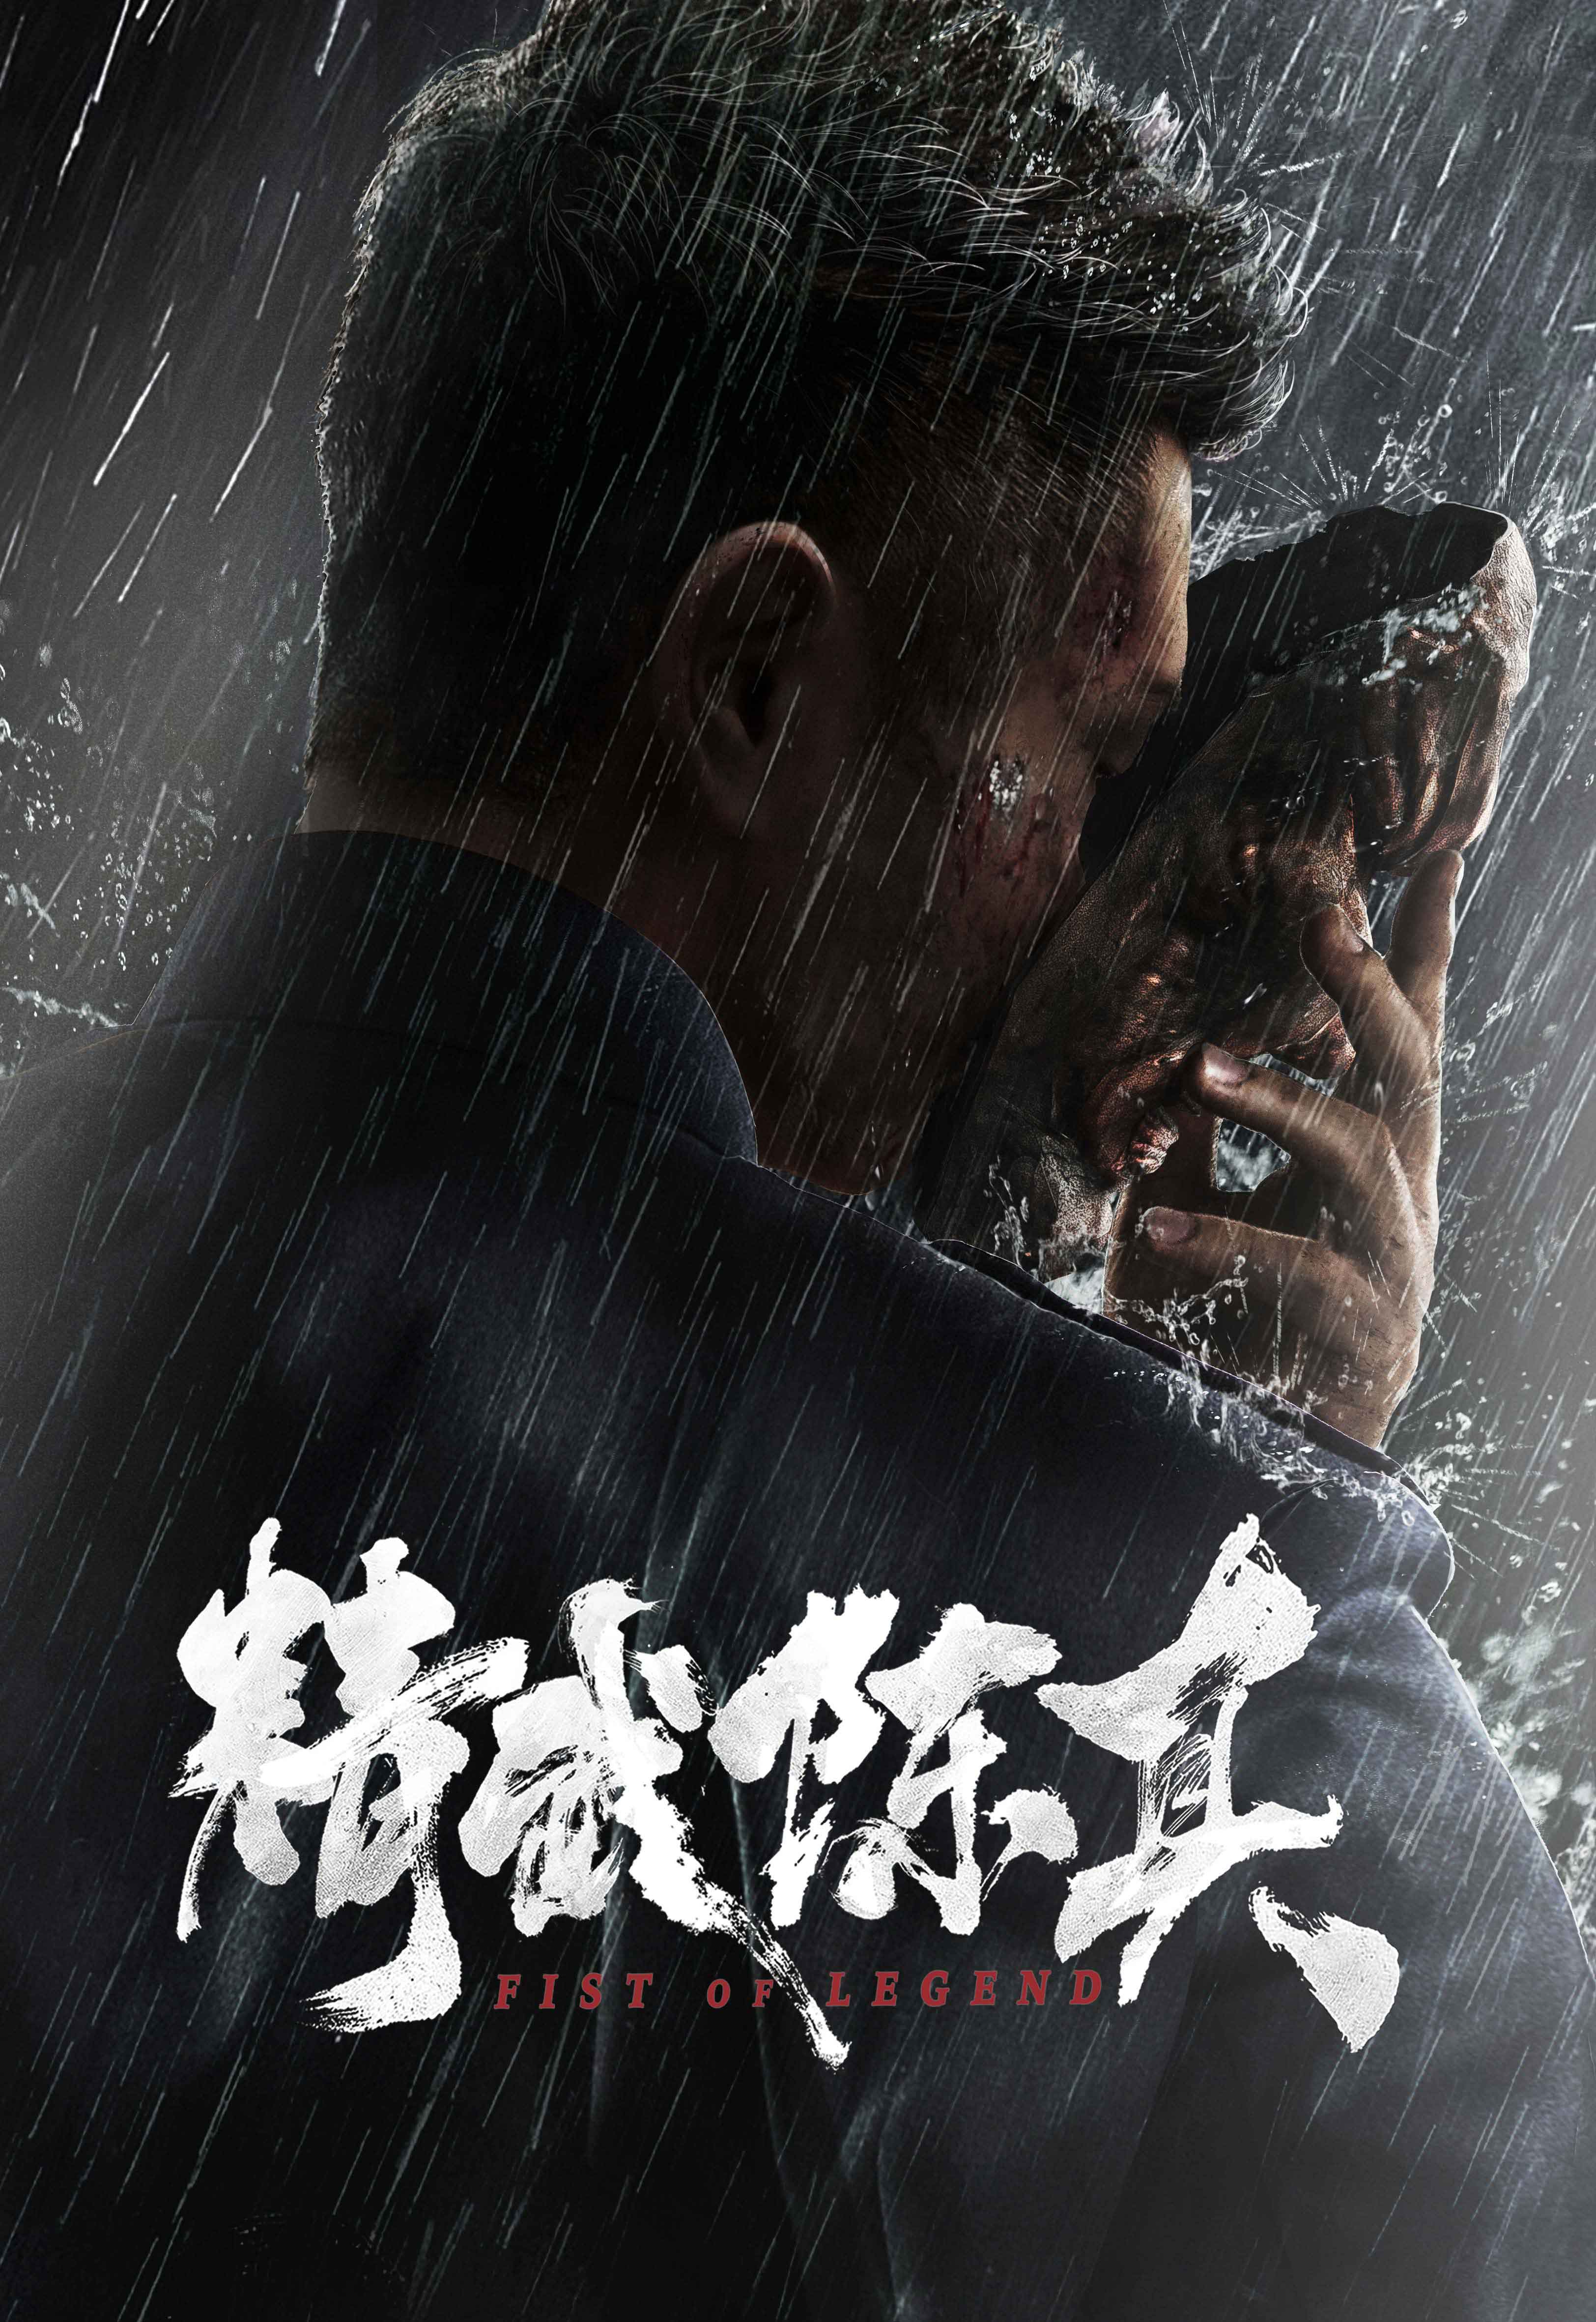 Кулак легенды (Fist of Legend, 2019) :: Все о кино Гонконга, Китая и Тайван...